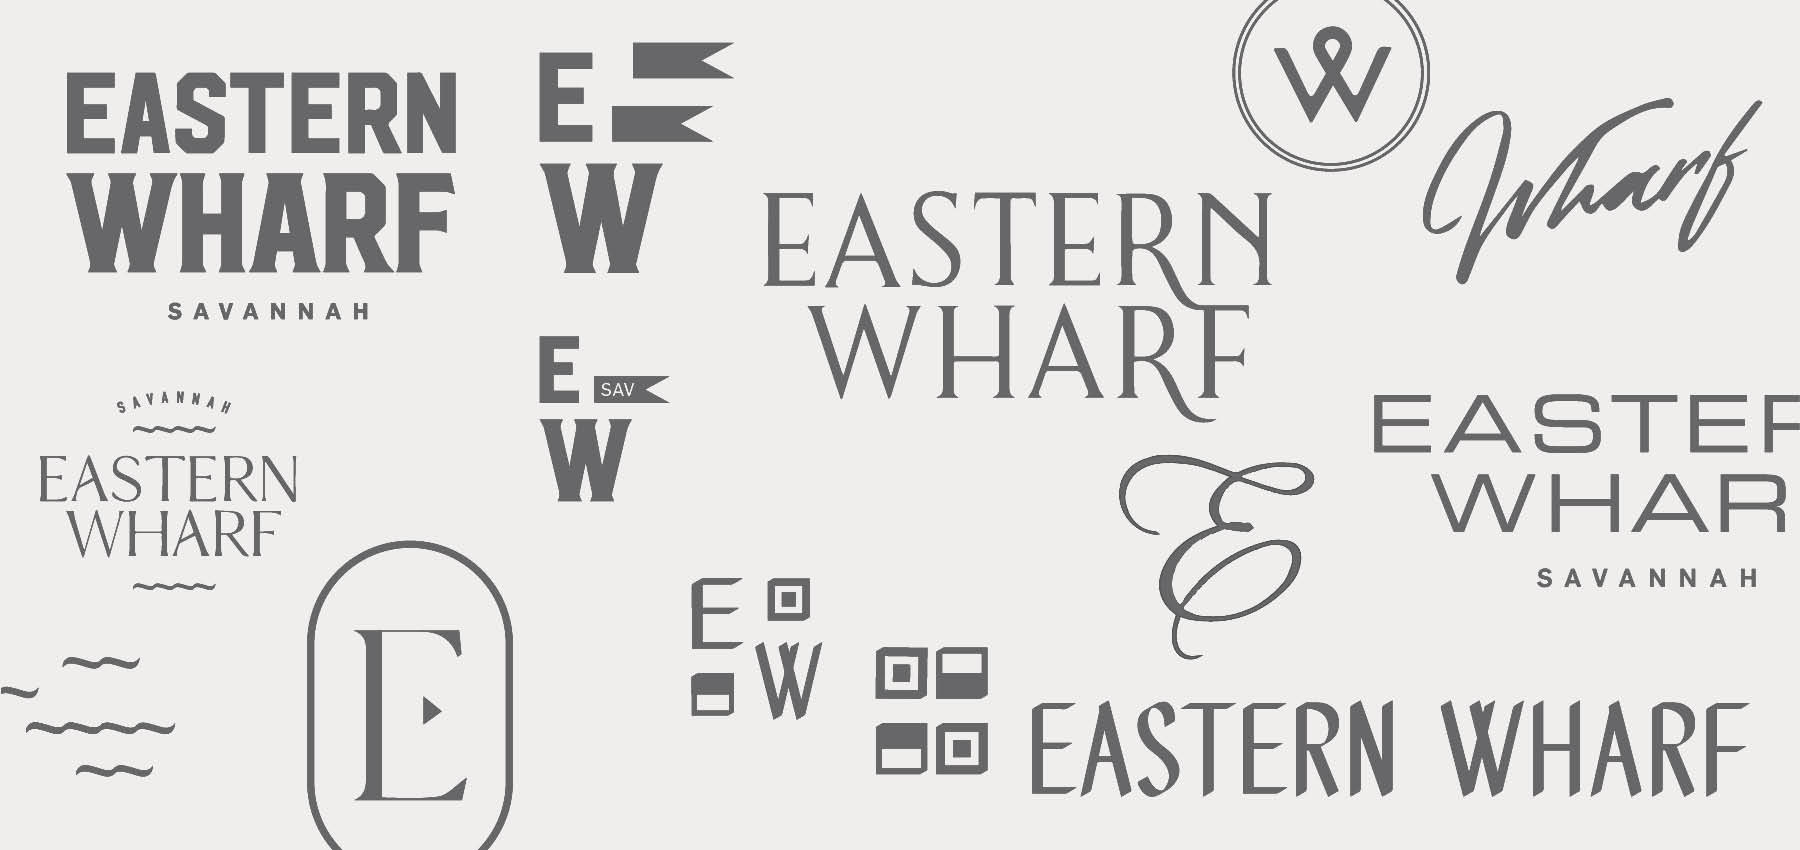 Eastern Wharf Logos